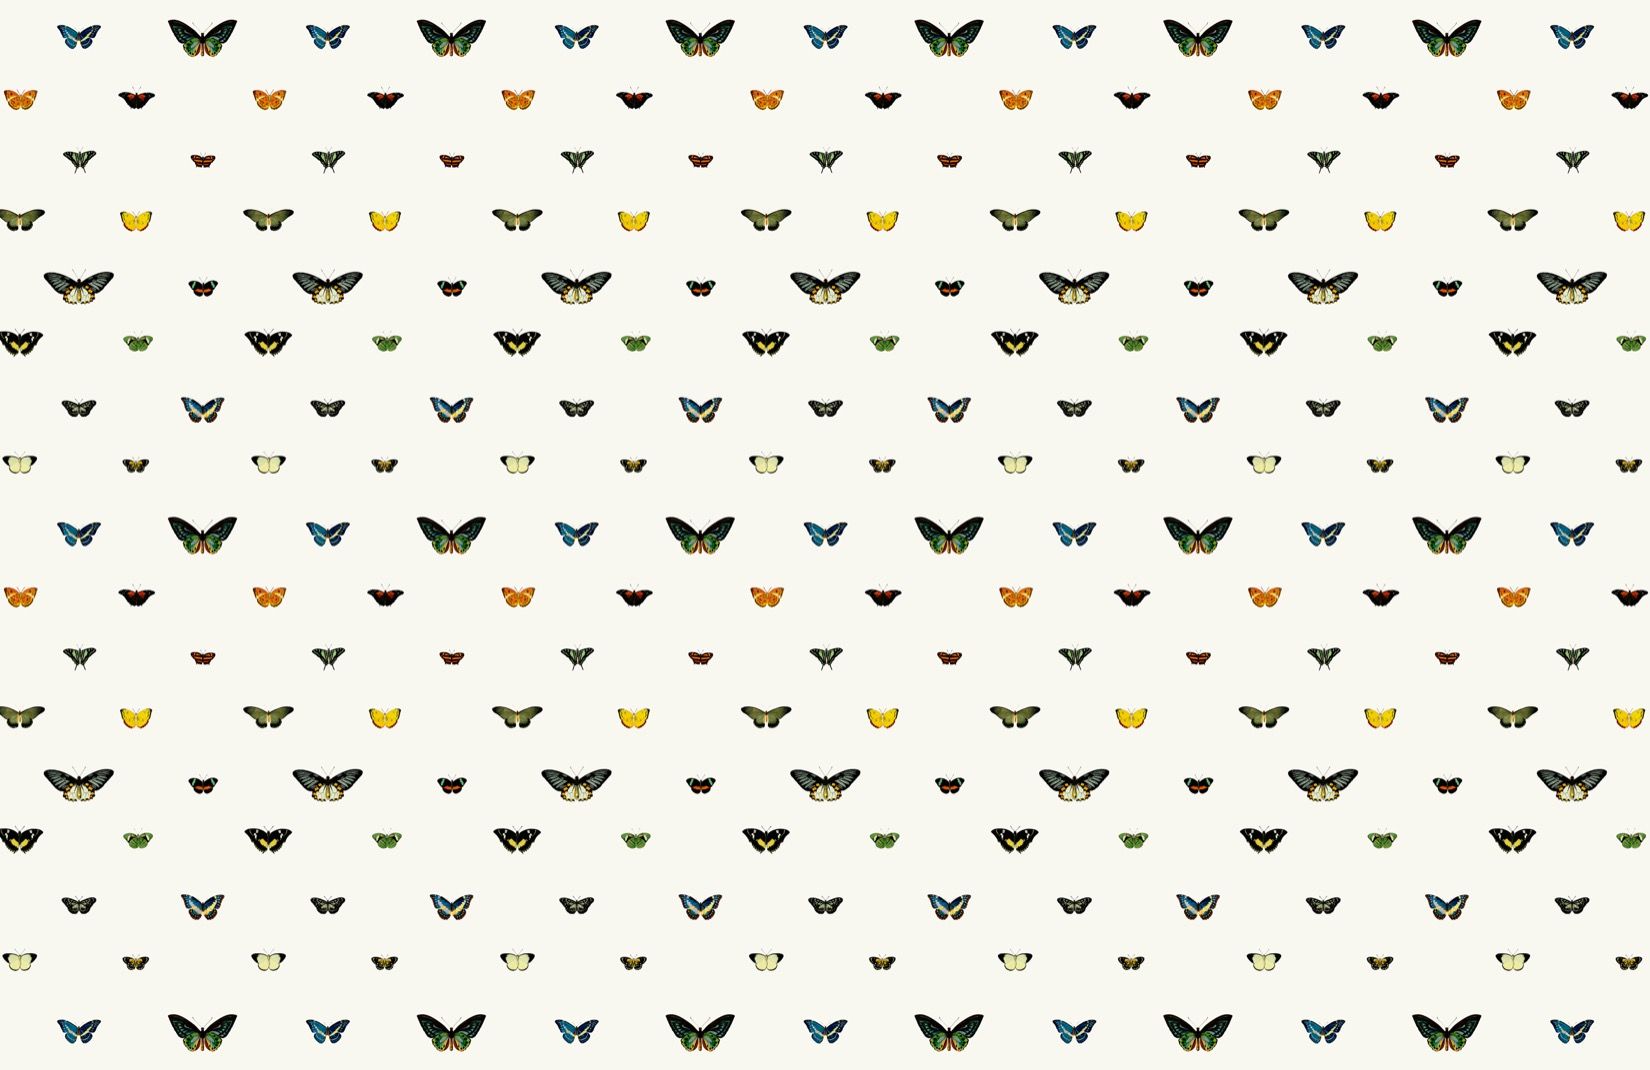 Monarch Butterfly Wallpaper